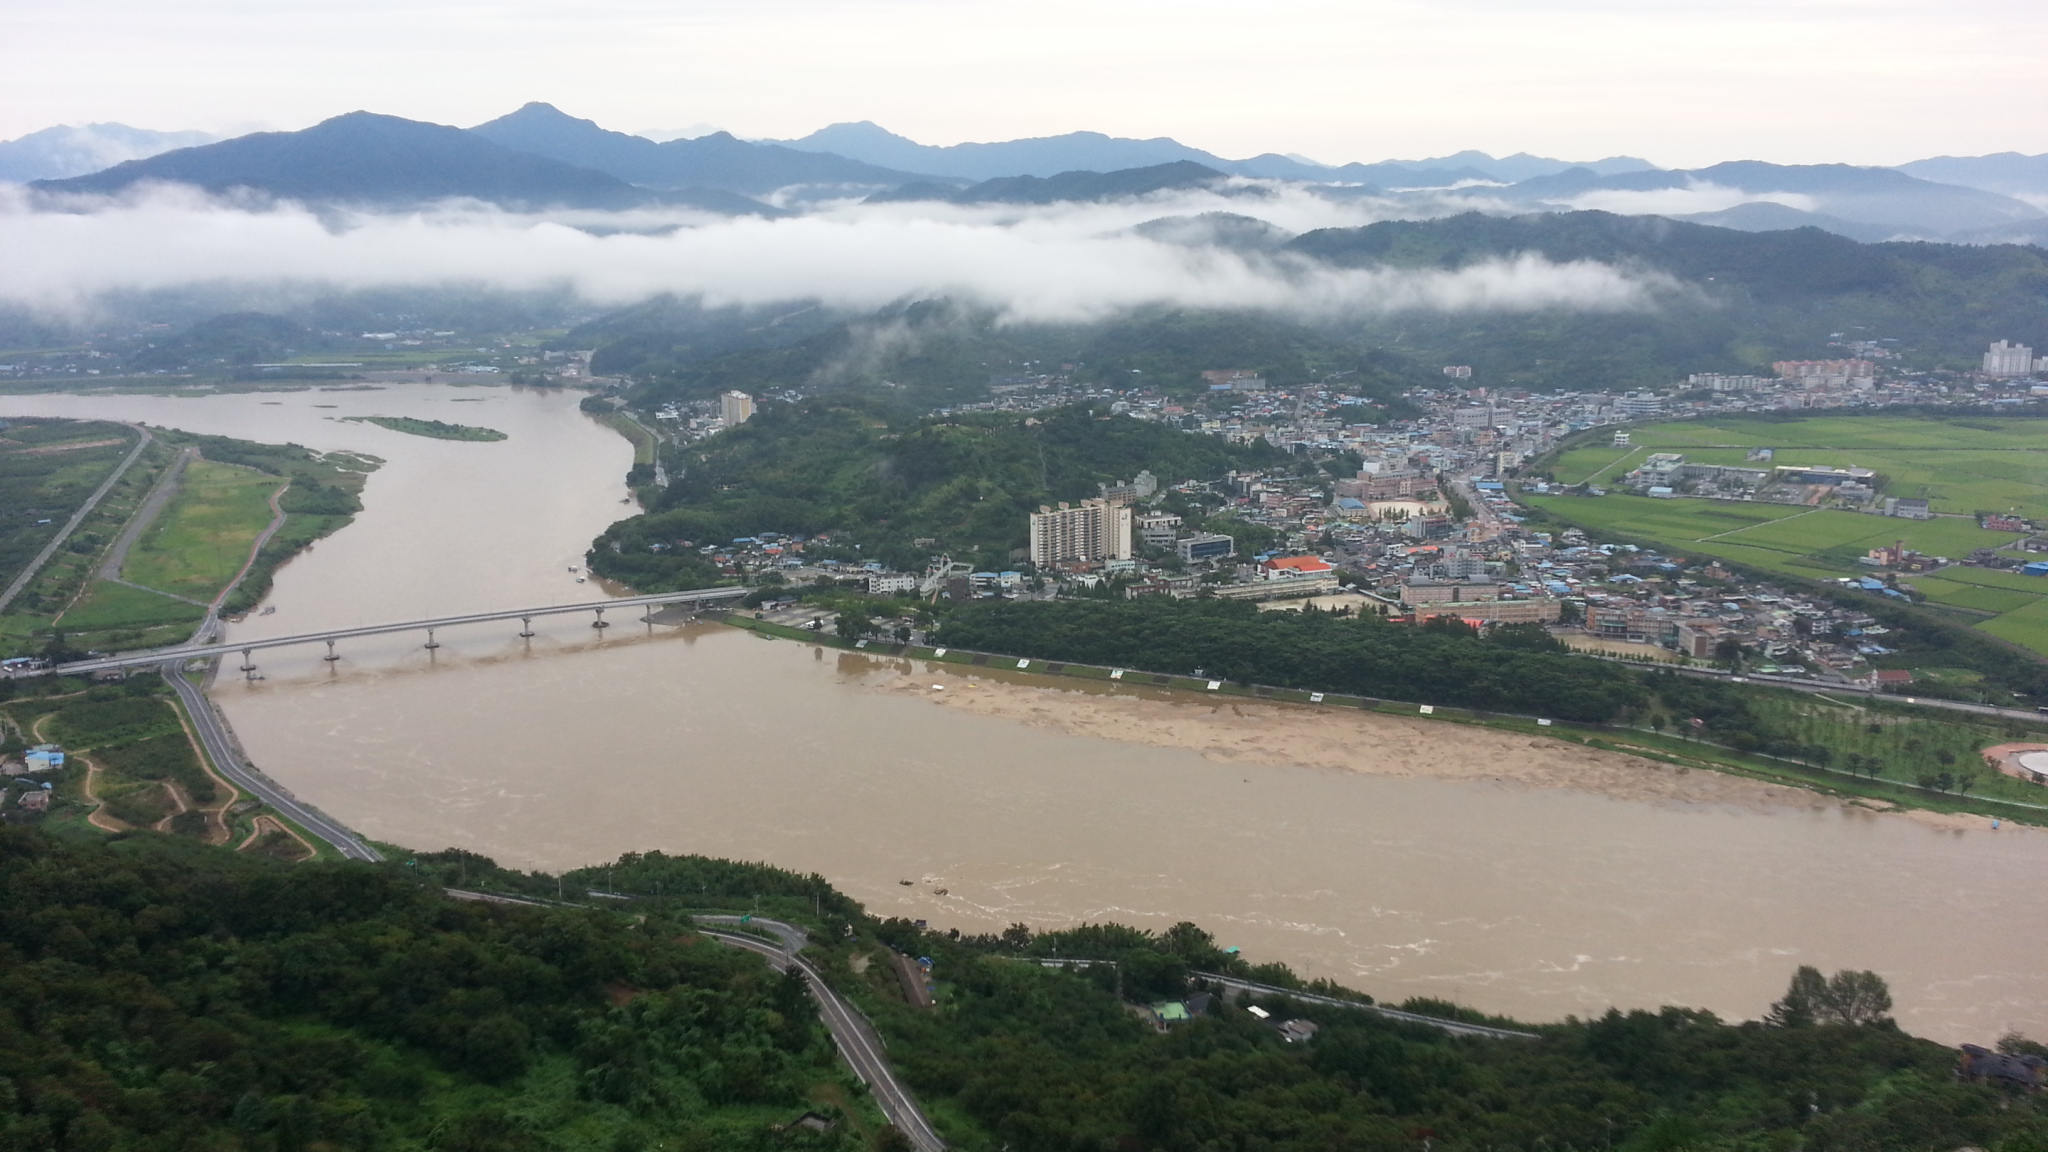 20130825_064838.jpg : 오늘 하동읍과 섬진강